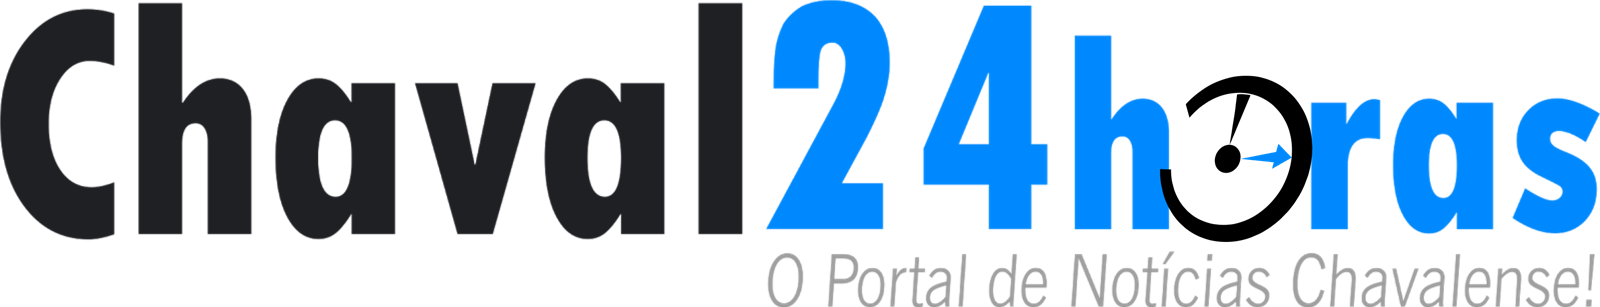 Chaval 24 horas - O portal de notícias Chavalense